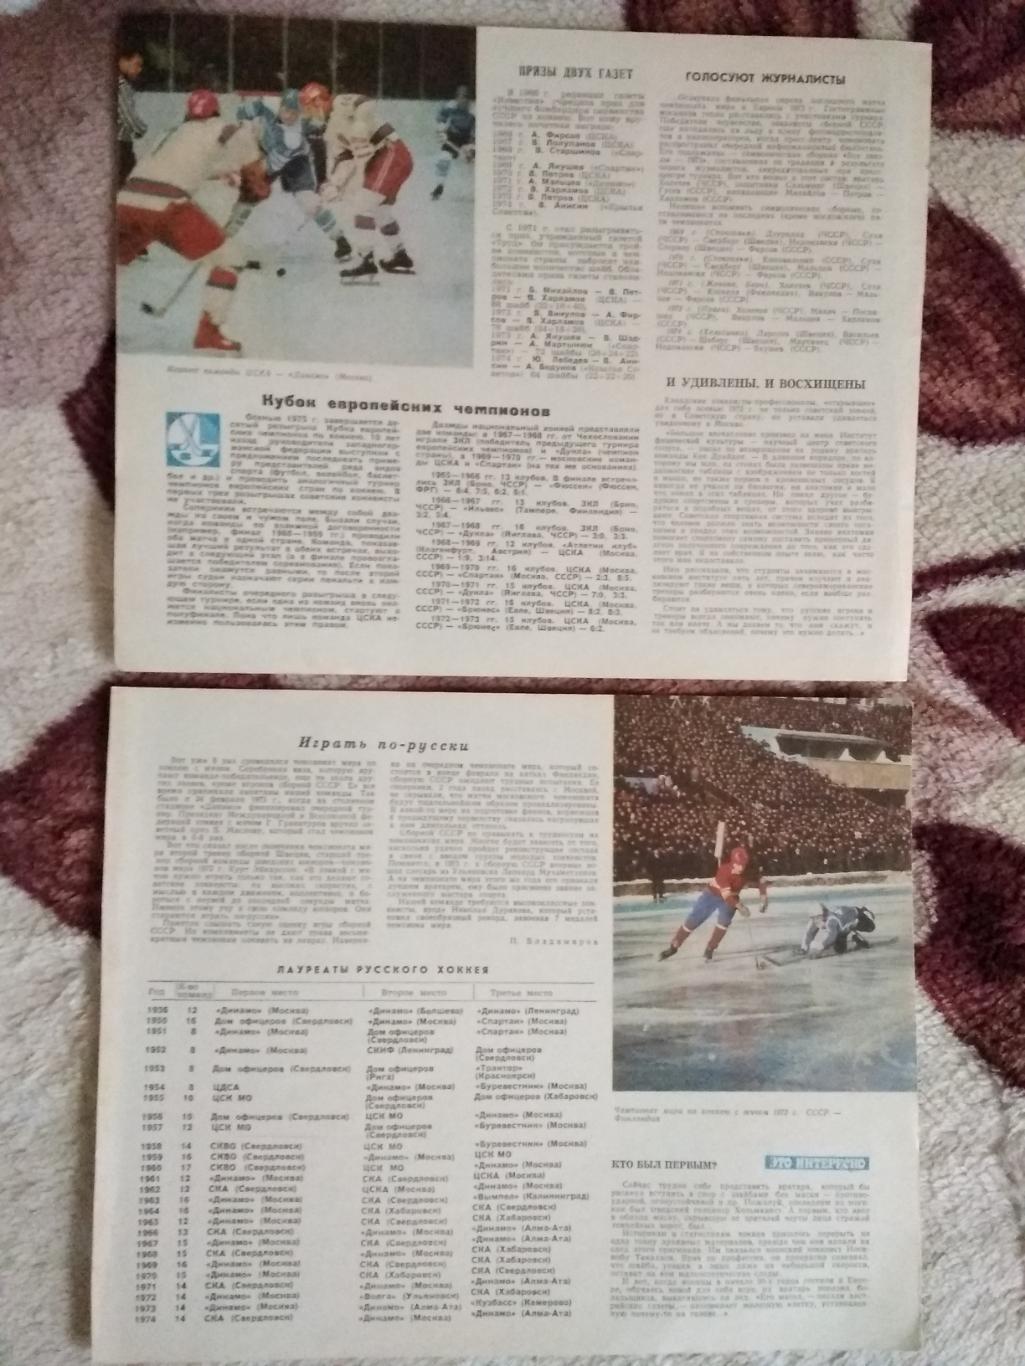 Статья.Хоккей,хоккей с мячом.Календарь Спорт 1975 г. 1